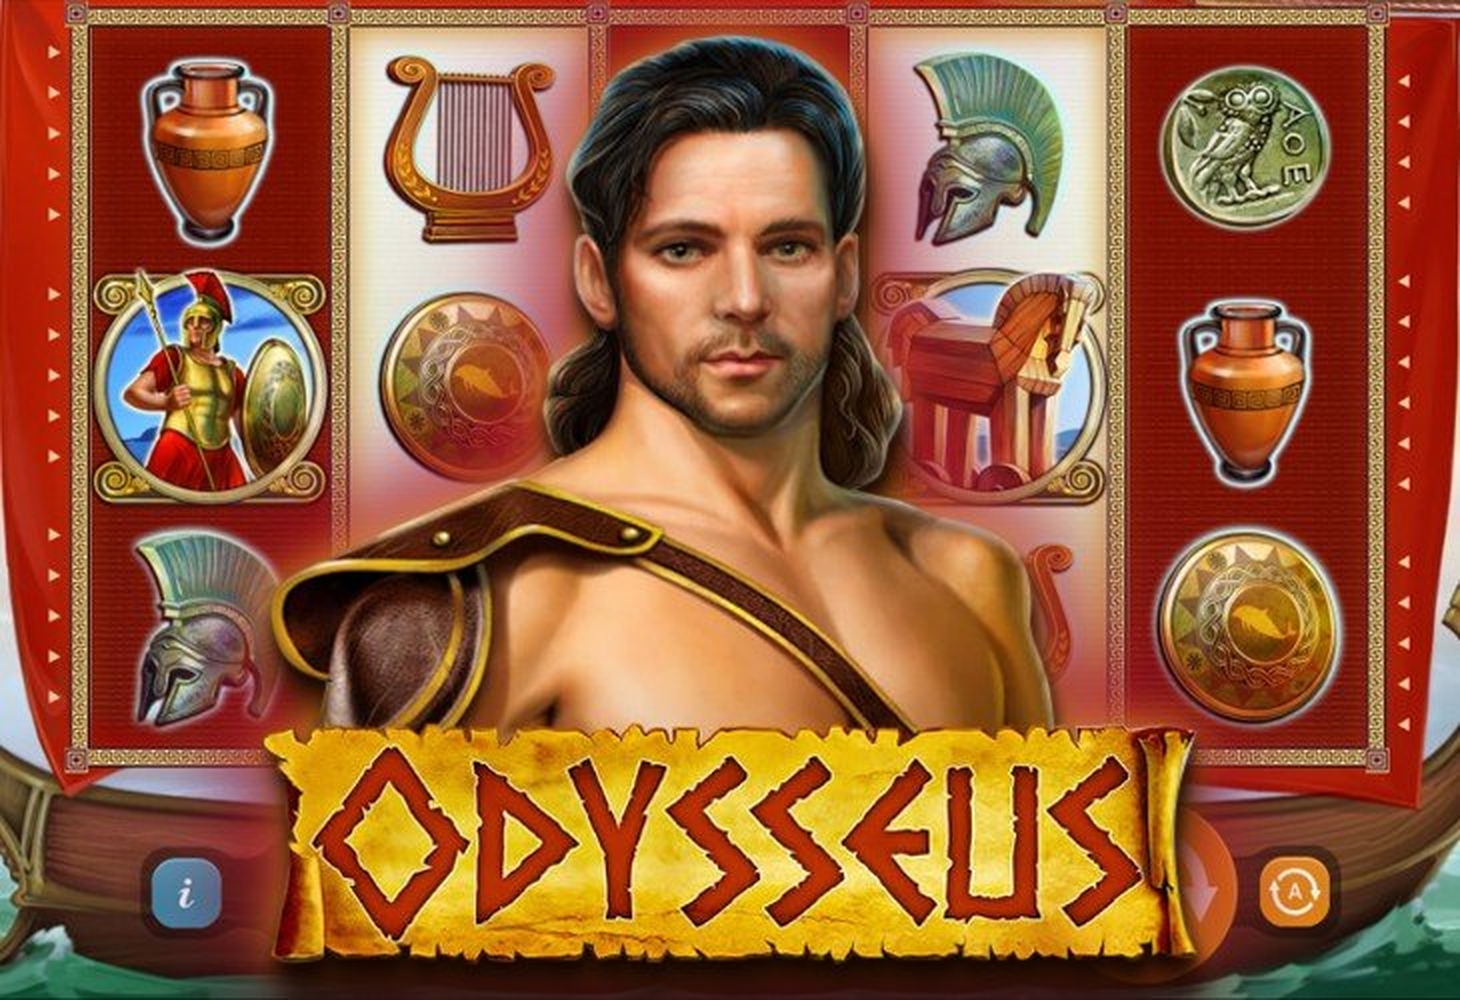 Odysseus demo